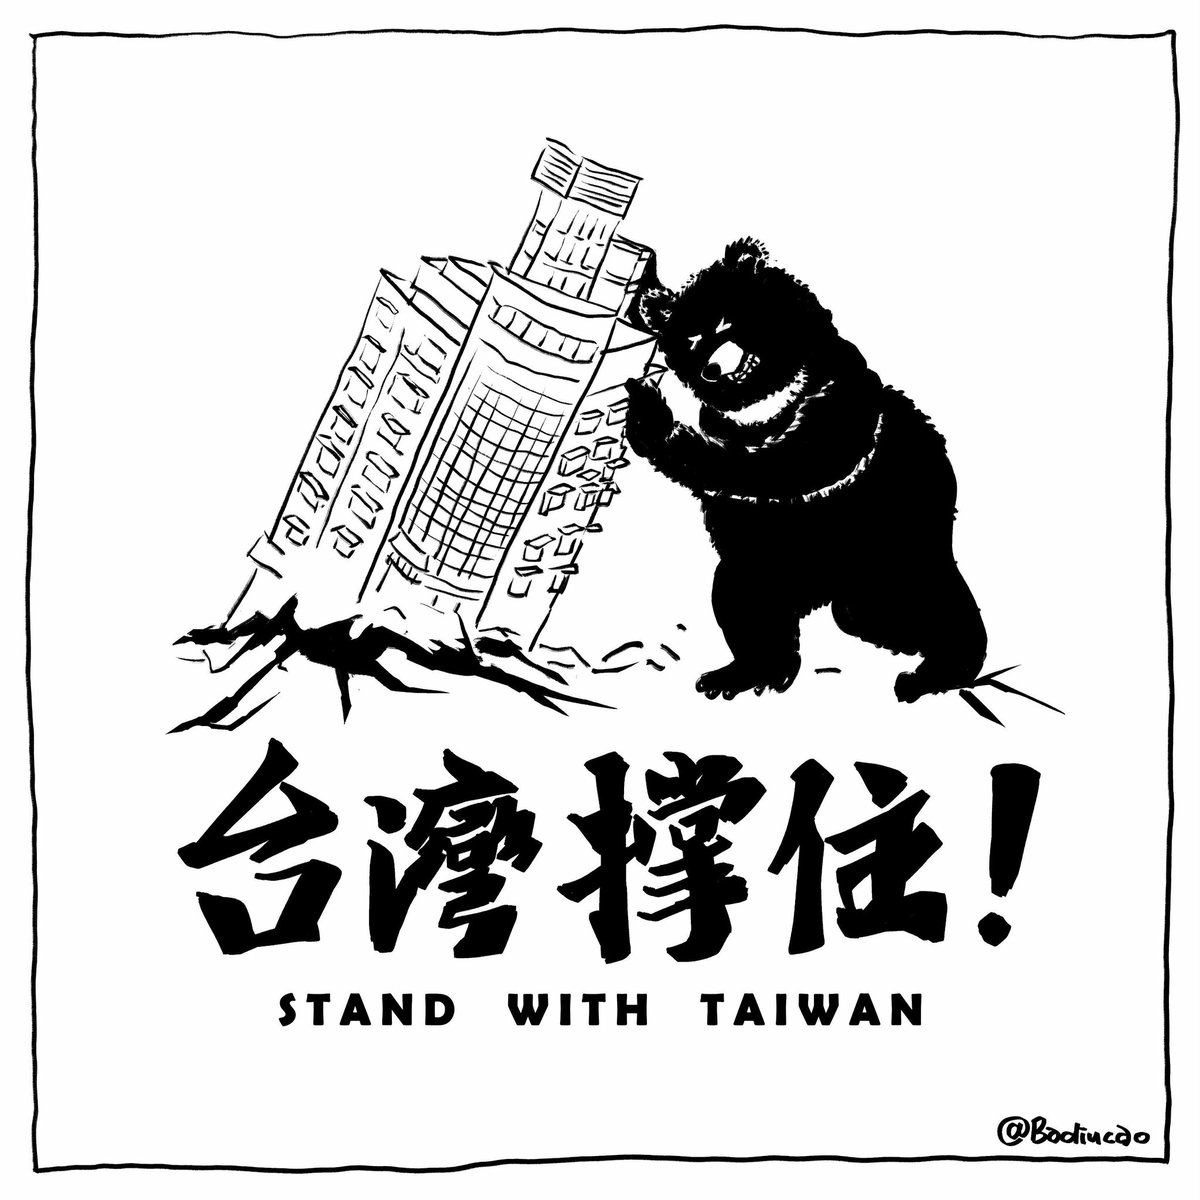 台湾撑住!
Taiwan hit by magnitude-7.5 earthquake.
Hope everyone stay safe ❤️

Art by 巴丢草 @badiucao
#StandWithTaiwan #台灣加油 #TaiwanIsACountry